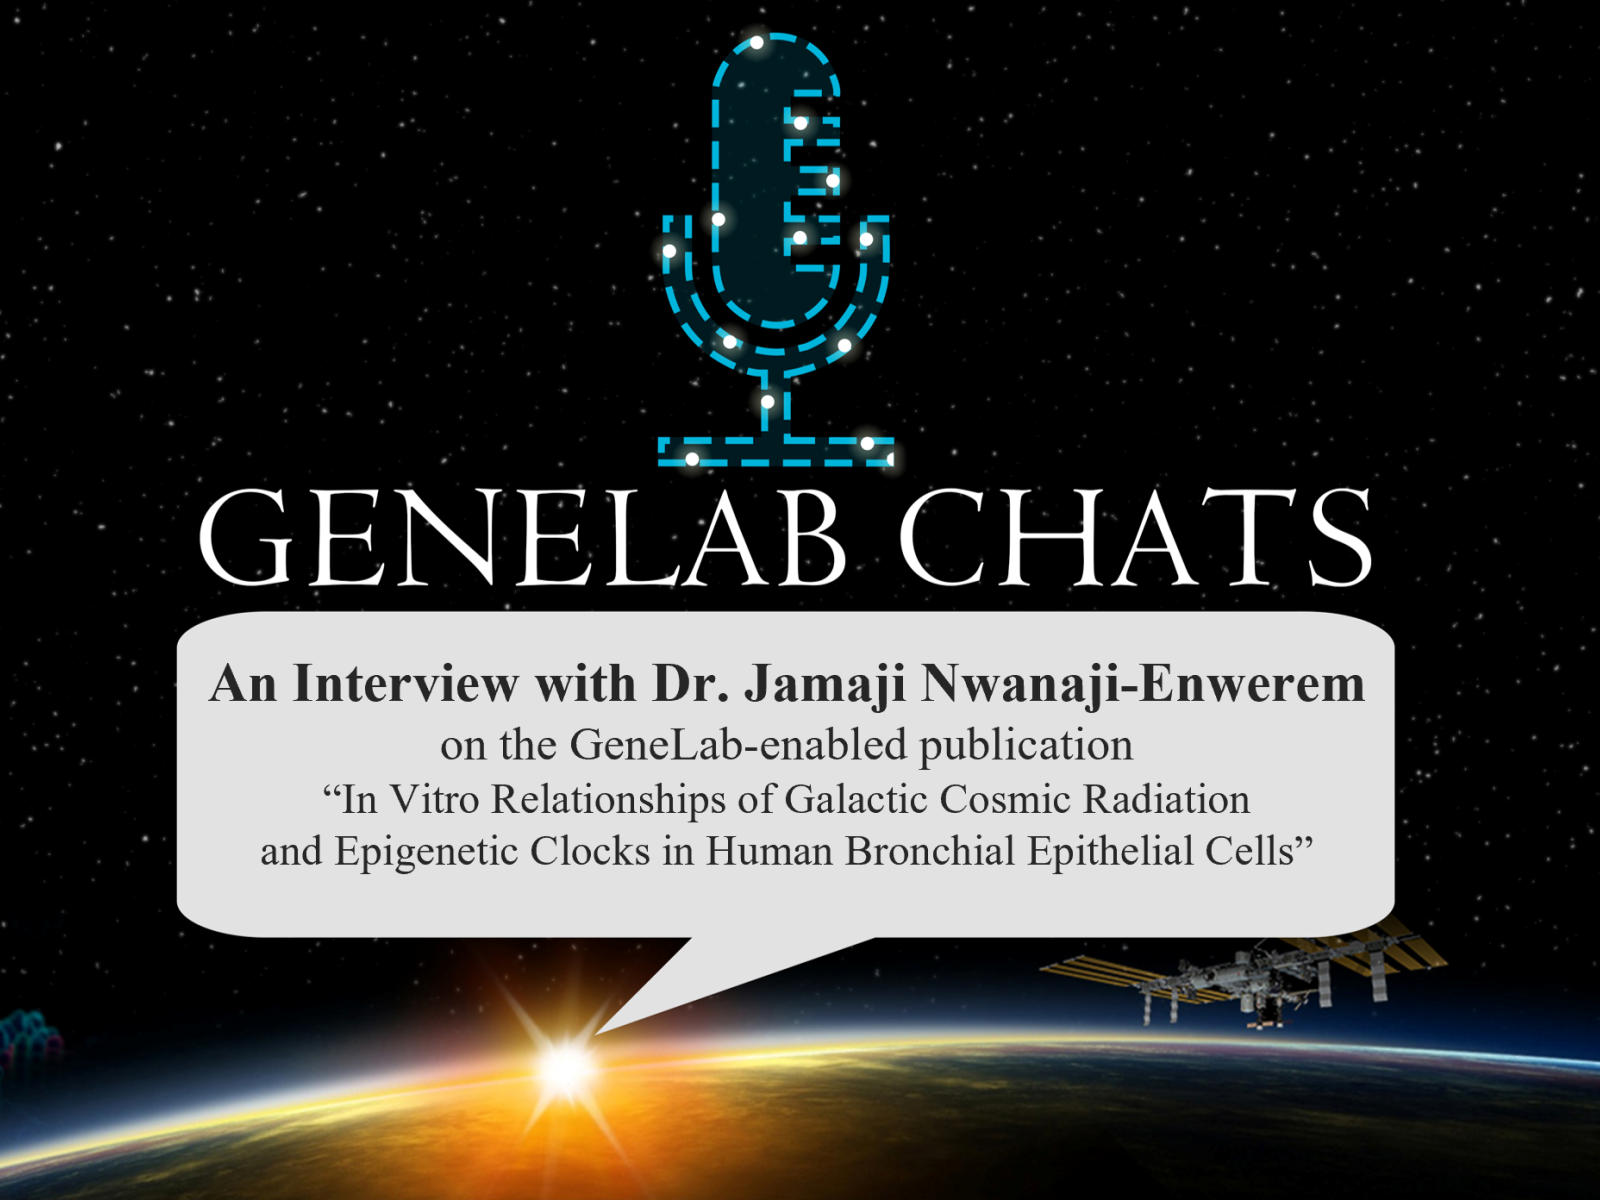 GeneLab Chats Title Slide for Dr. Jamaji Nwanaji-Enwerem